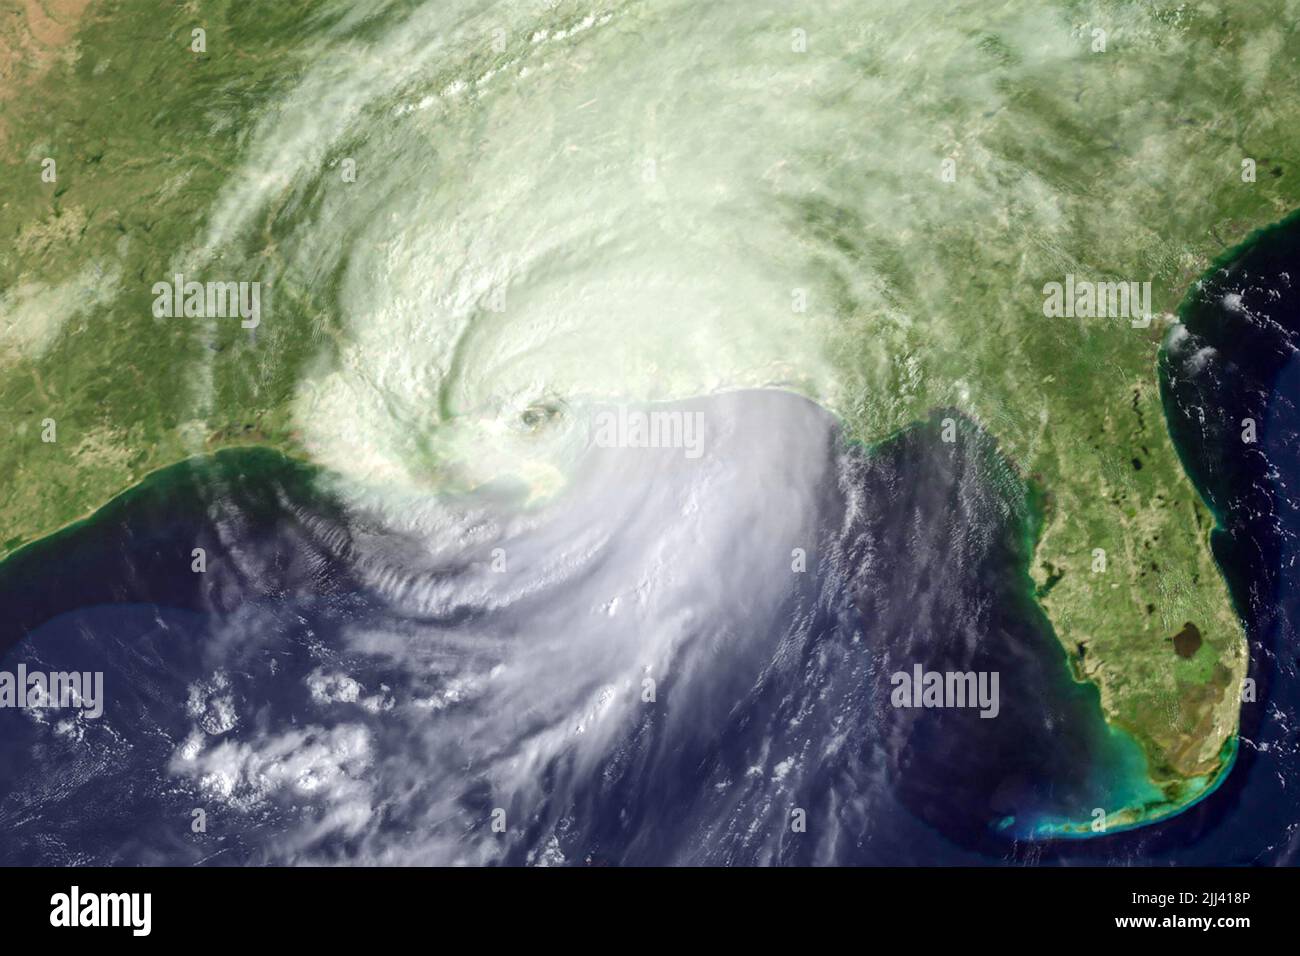 L'ouragan Katrina, une tempête dévastatrice de catégorie 5, a touché terre près de la Nouvelle-Orléans, Louisiane, sur 29 août 2005. (ÉTATS-UNIS) Banque D'Images